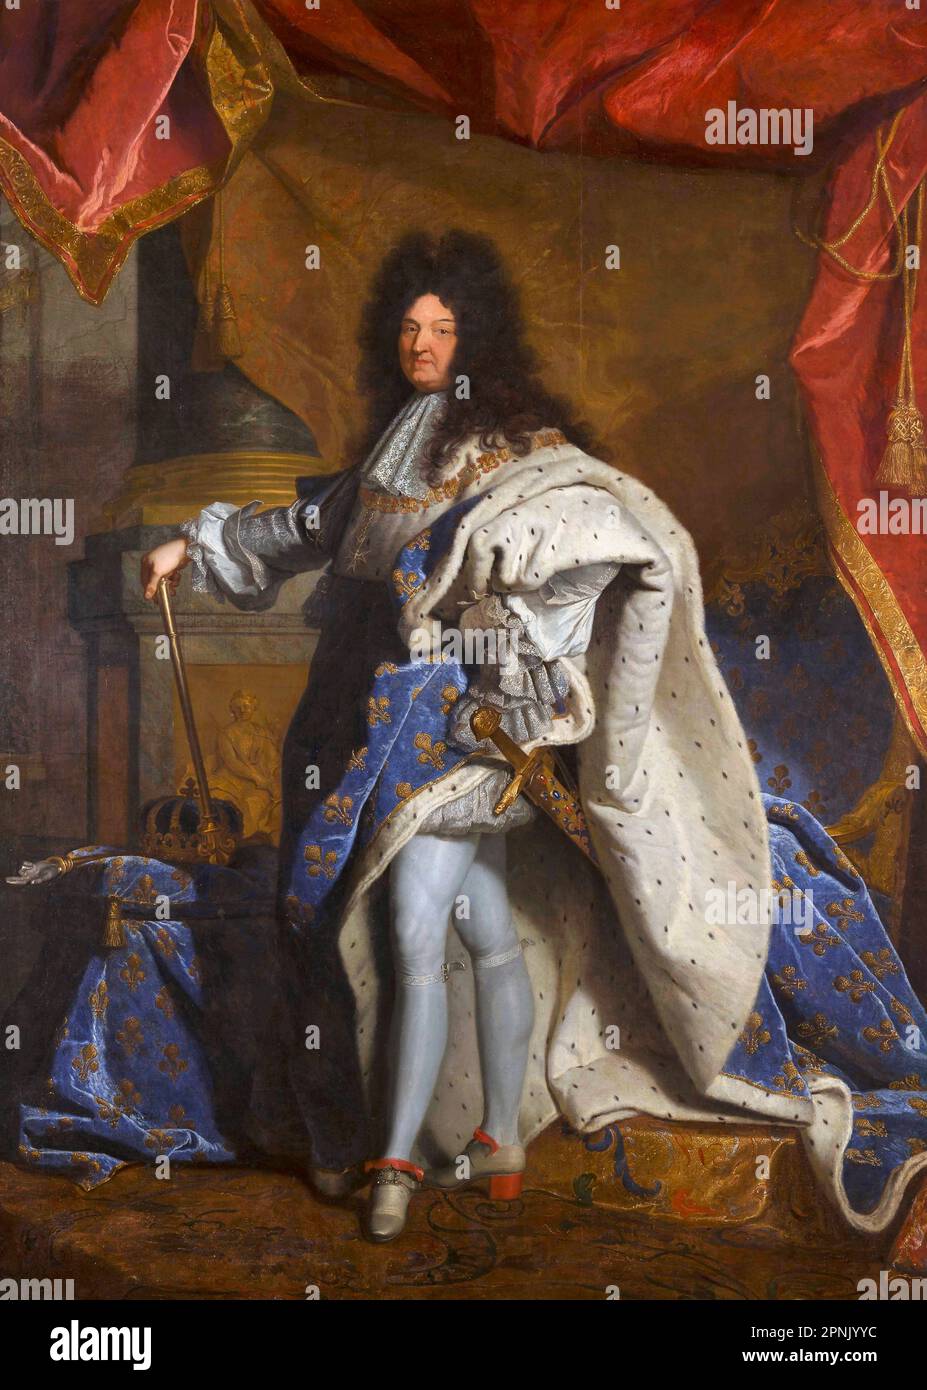 Louis XIV Portrait du roi Louis XIV de France (1638-1715) par Hyacinthe Rigaud (1659-1743), huile sur toile, 1702 Banque D'Images